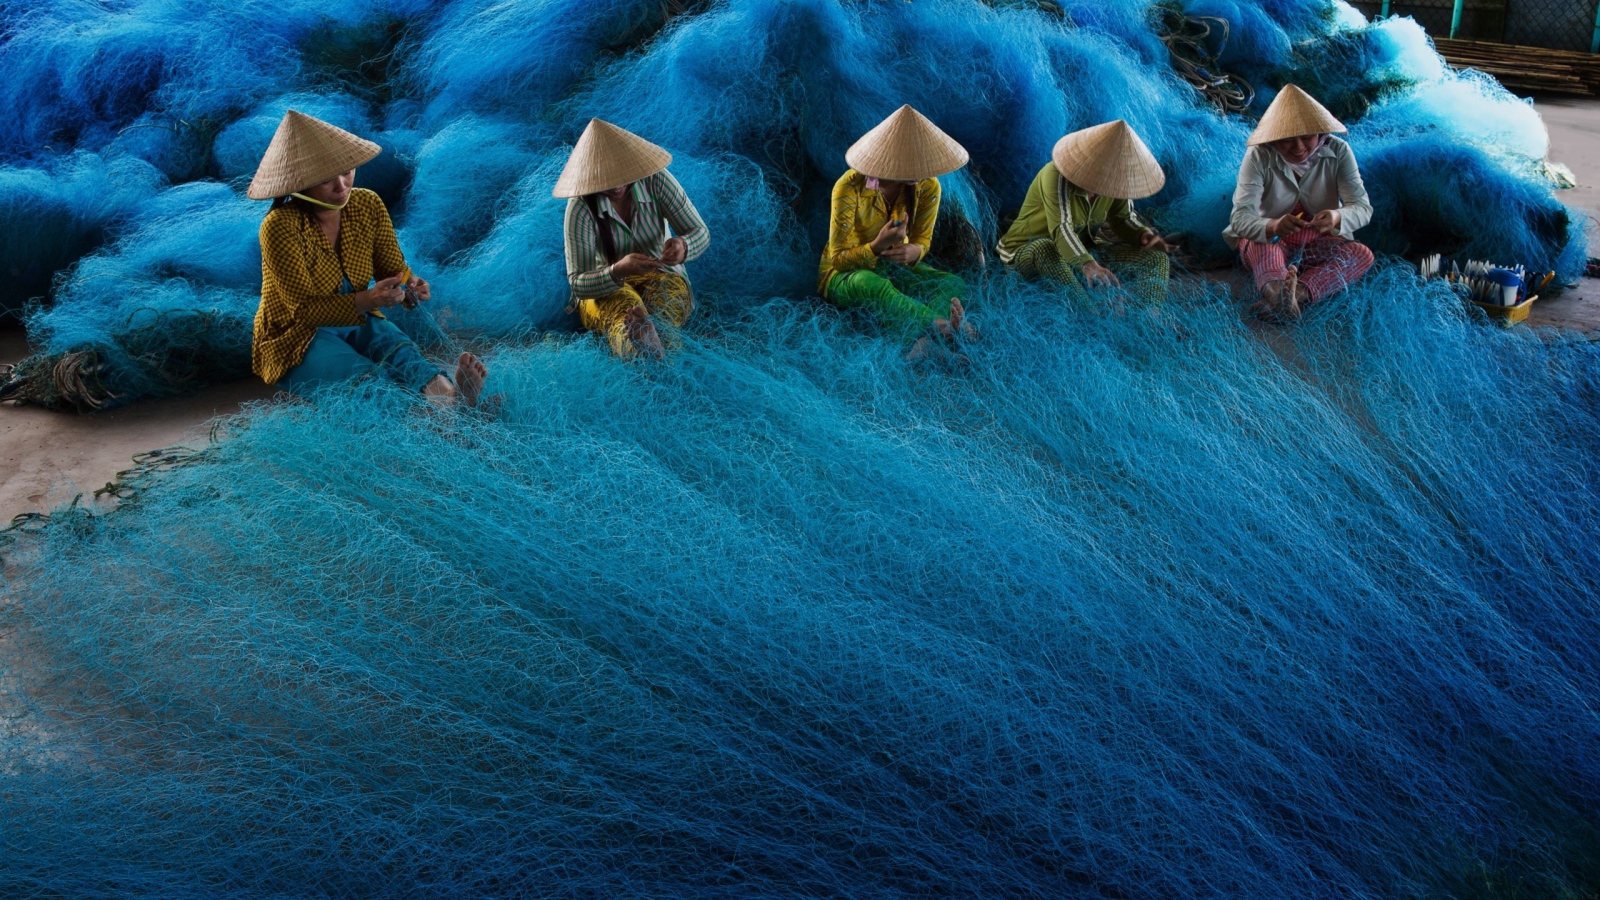 Вьетнамские женщины плетут рыболовные сети